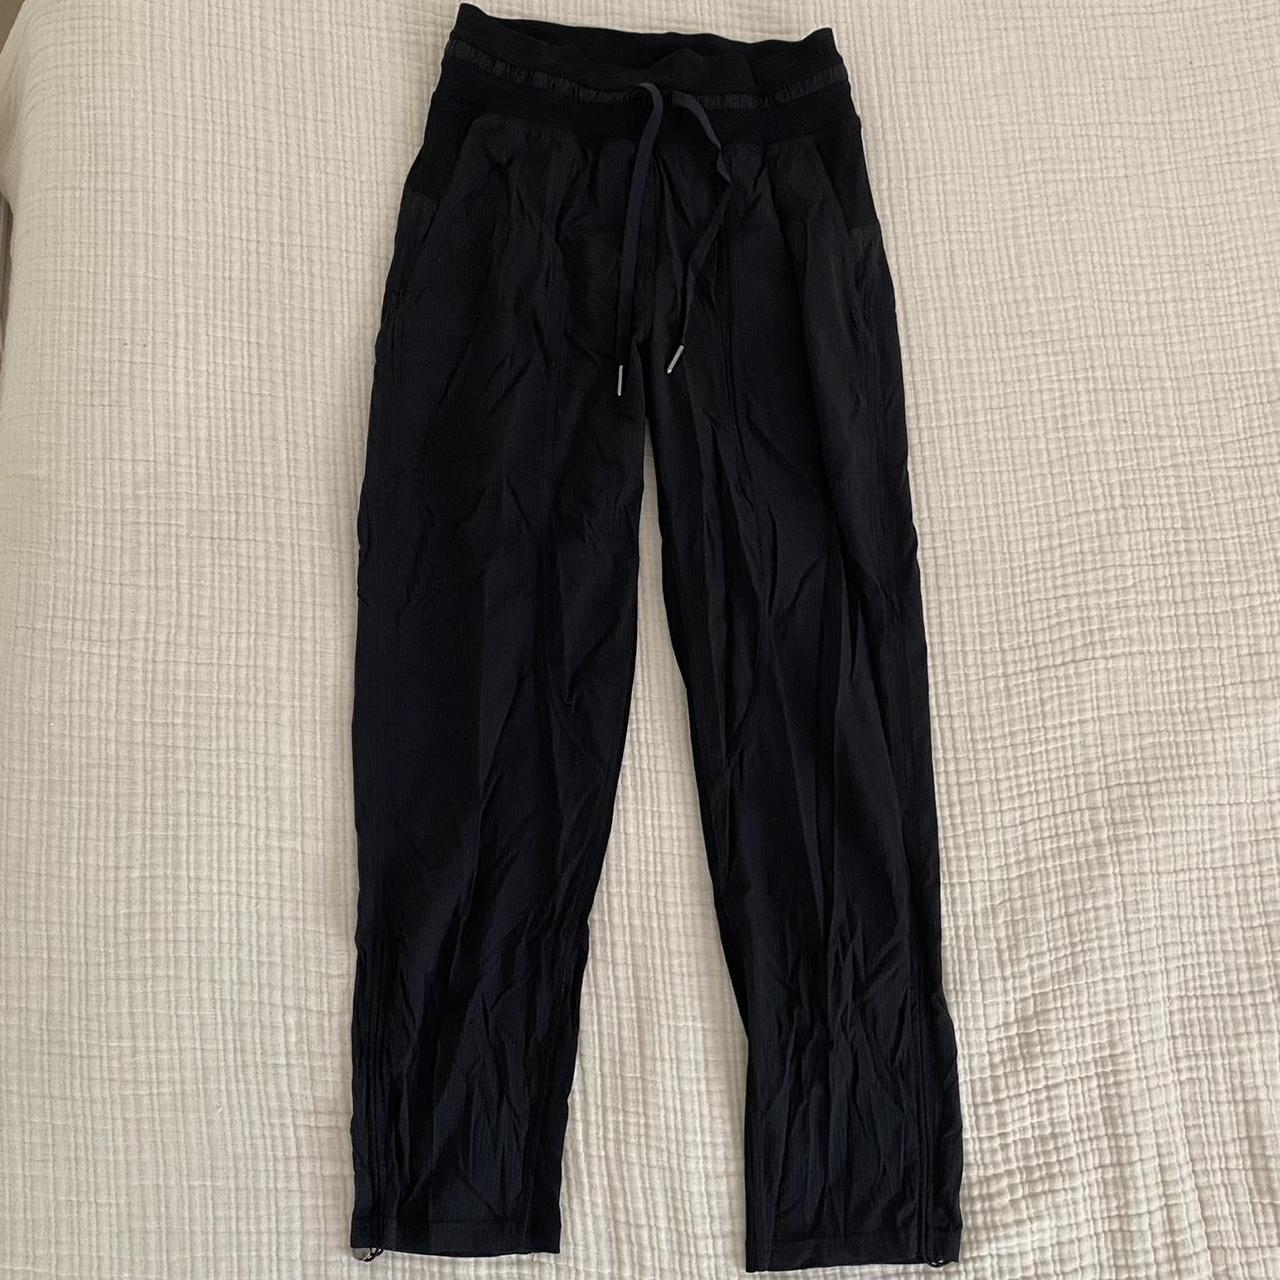 Lululemon Dance Studio Pants, Gently worn, overall in